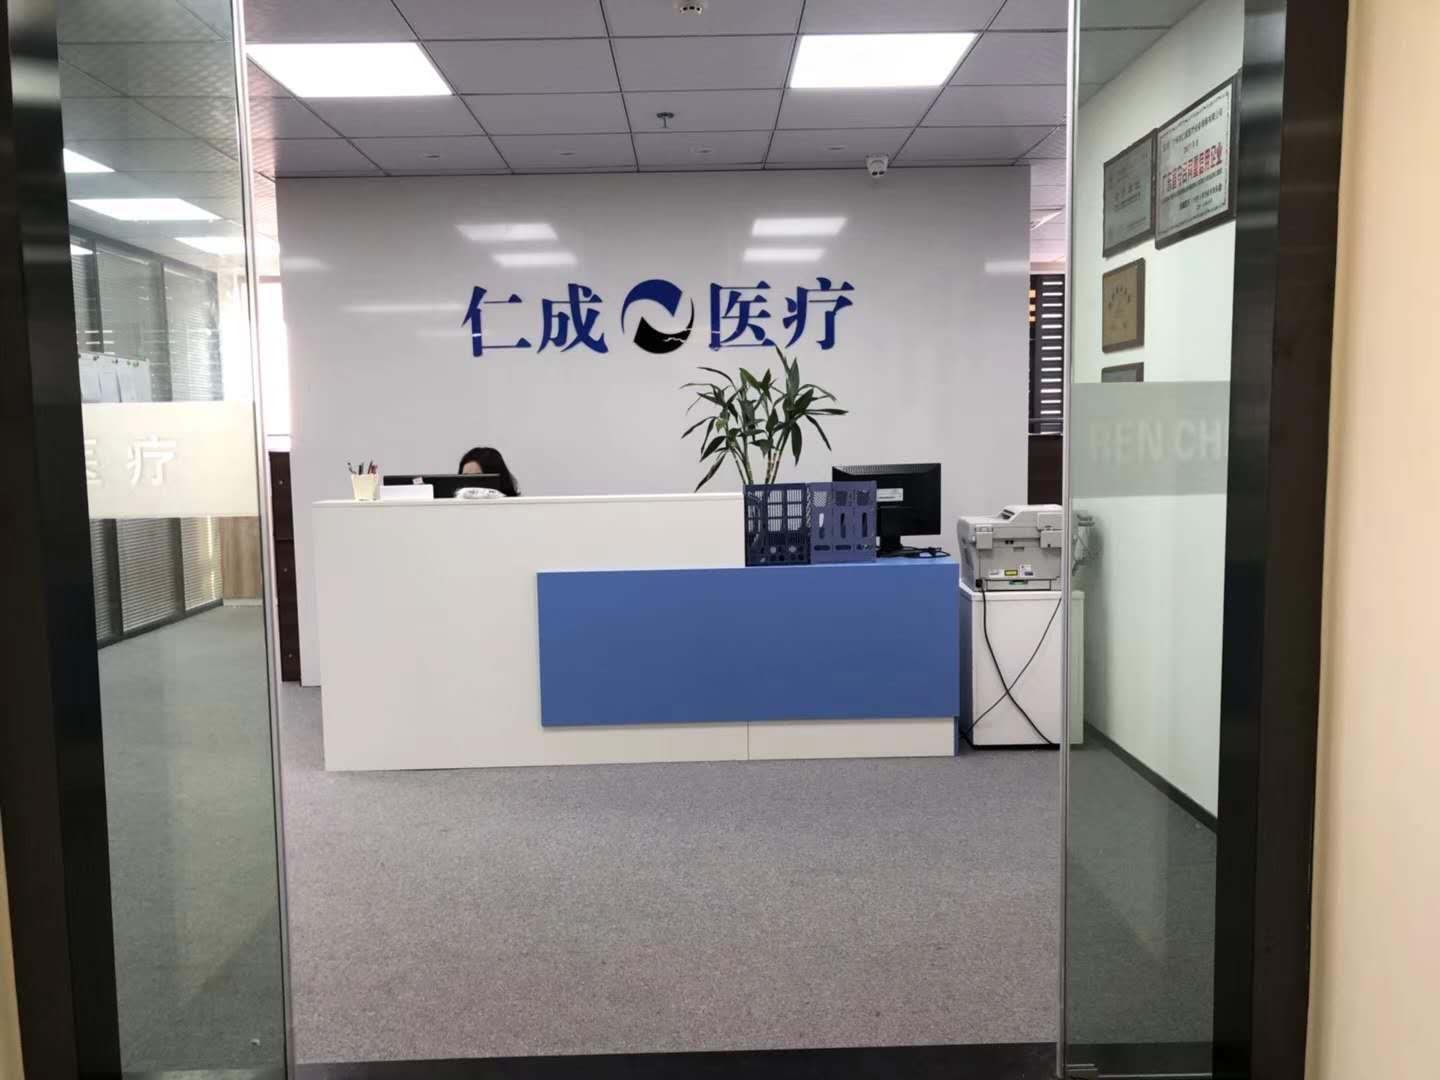 广州市仁成医疗设备维修有限公司